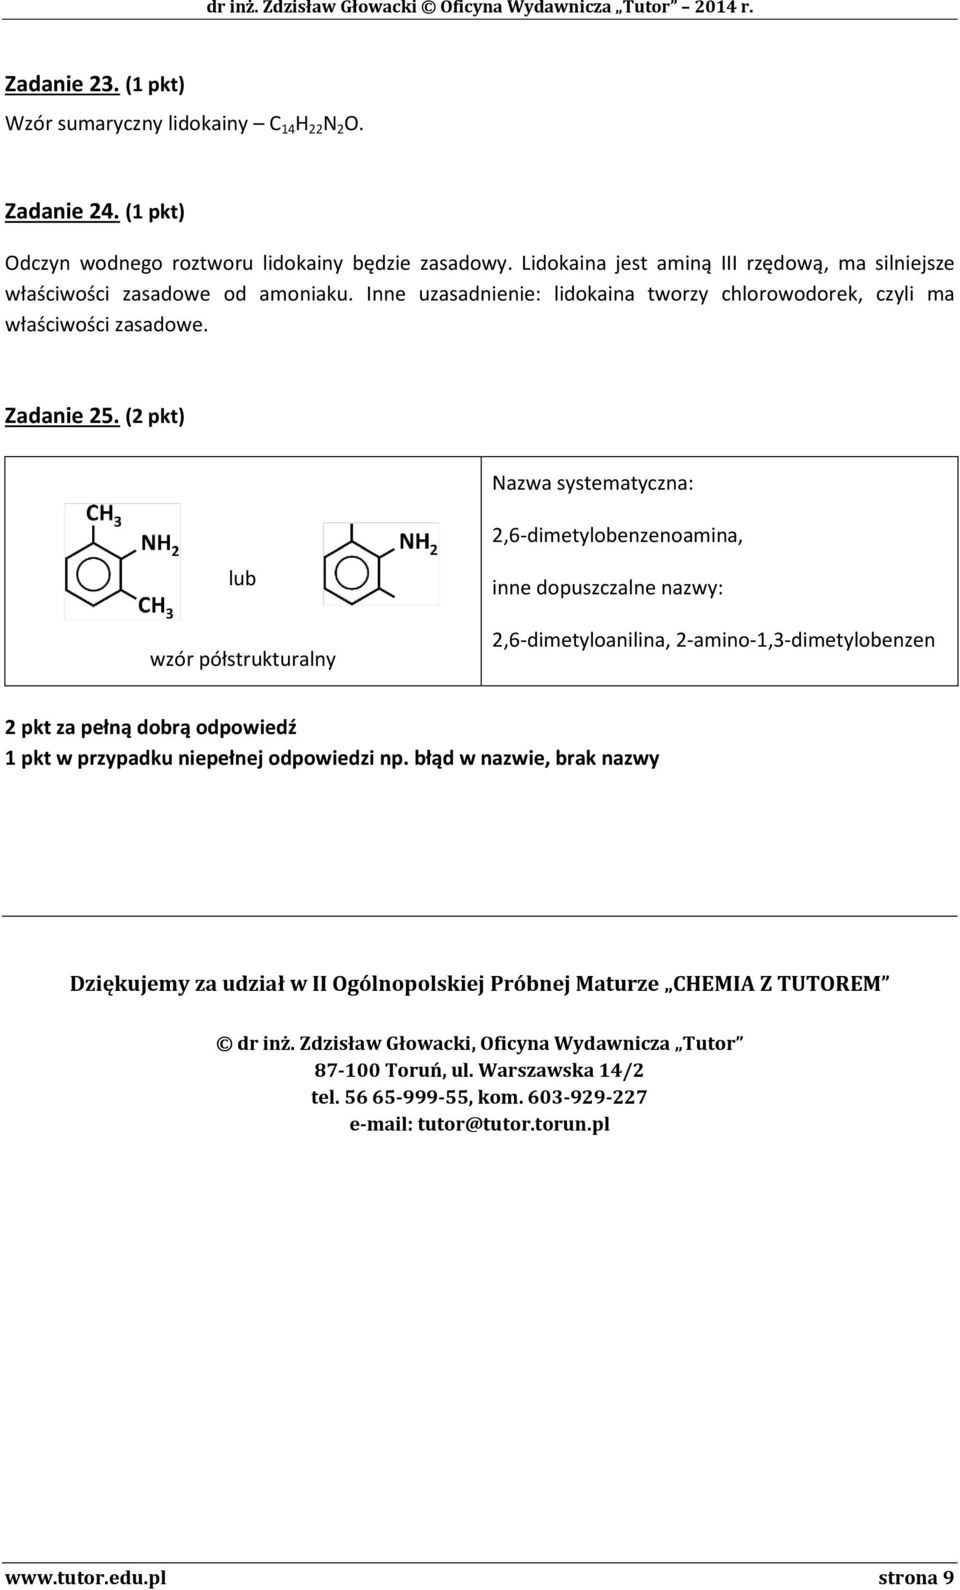 ( pkt) Nazwa systematyczna:,6-dimetylobenzenoamina, lub wzór półstrukturalny inne dopuszczalne nazwy:,6-dimetyloanilina, -amino-1,3-dimetylobenzen pkt za pełną dobrą odpowiedź 1 pkt w przypadku